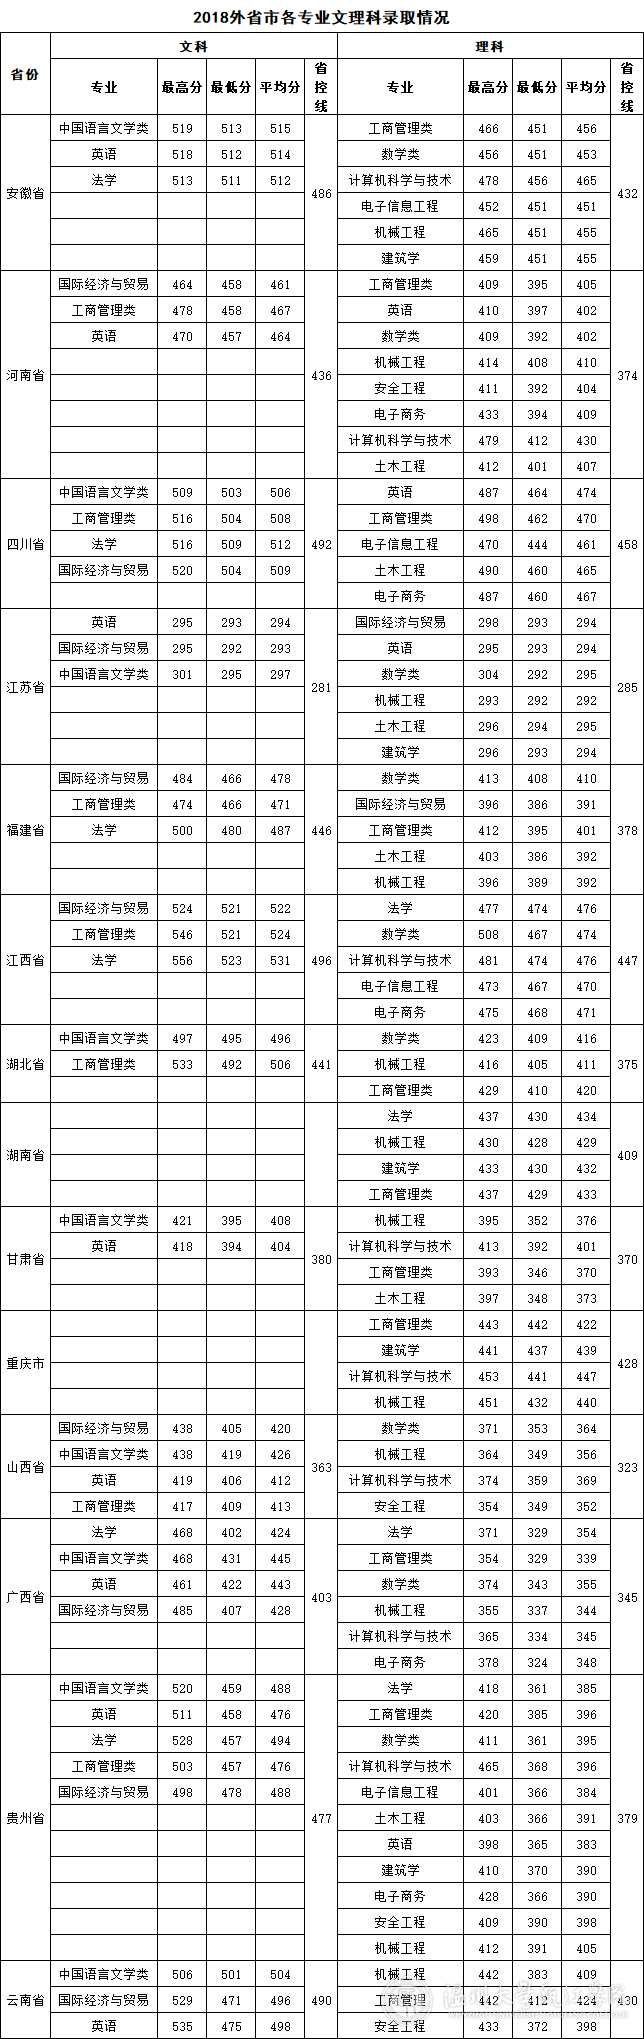 2021年温州大学瓯江学院专业最低分和最低录取位次排名多少,附历年最低分数据